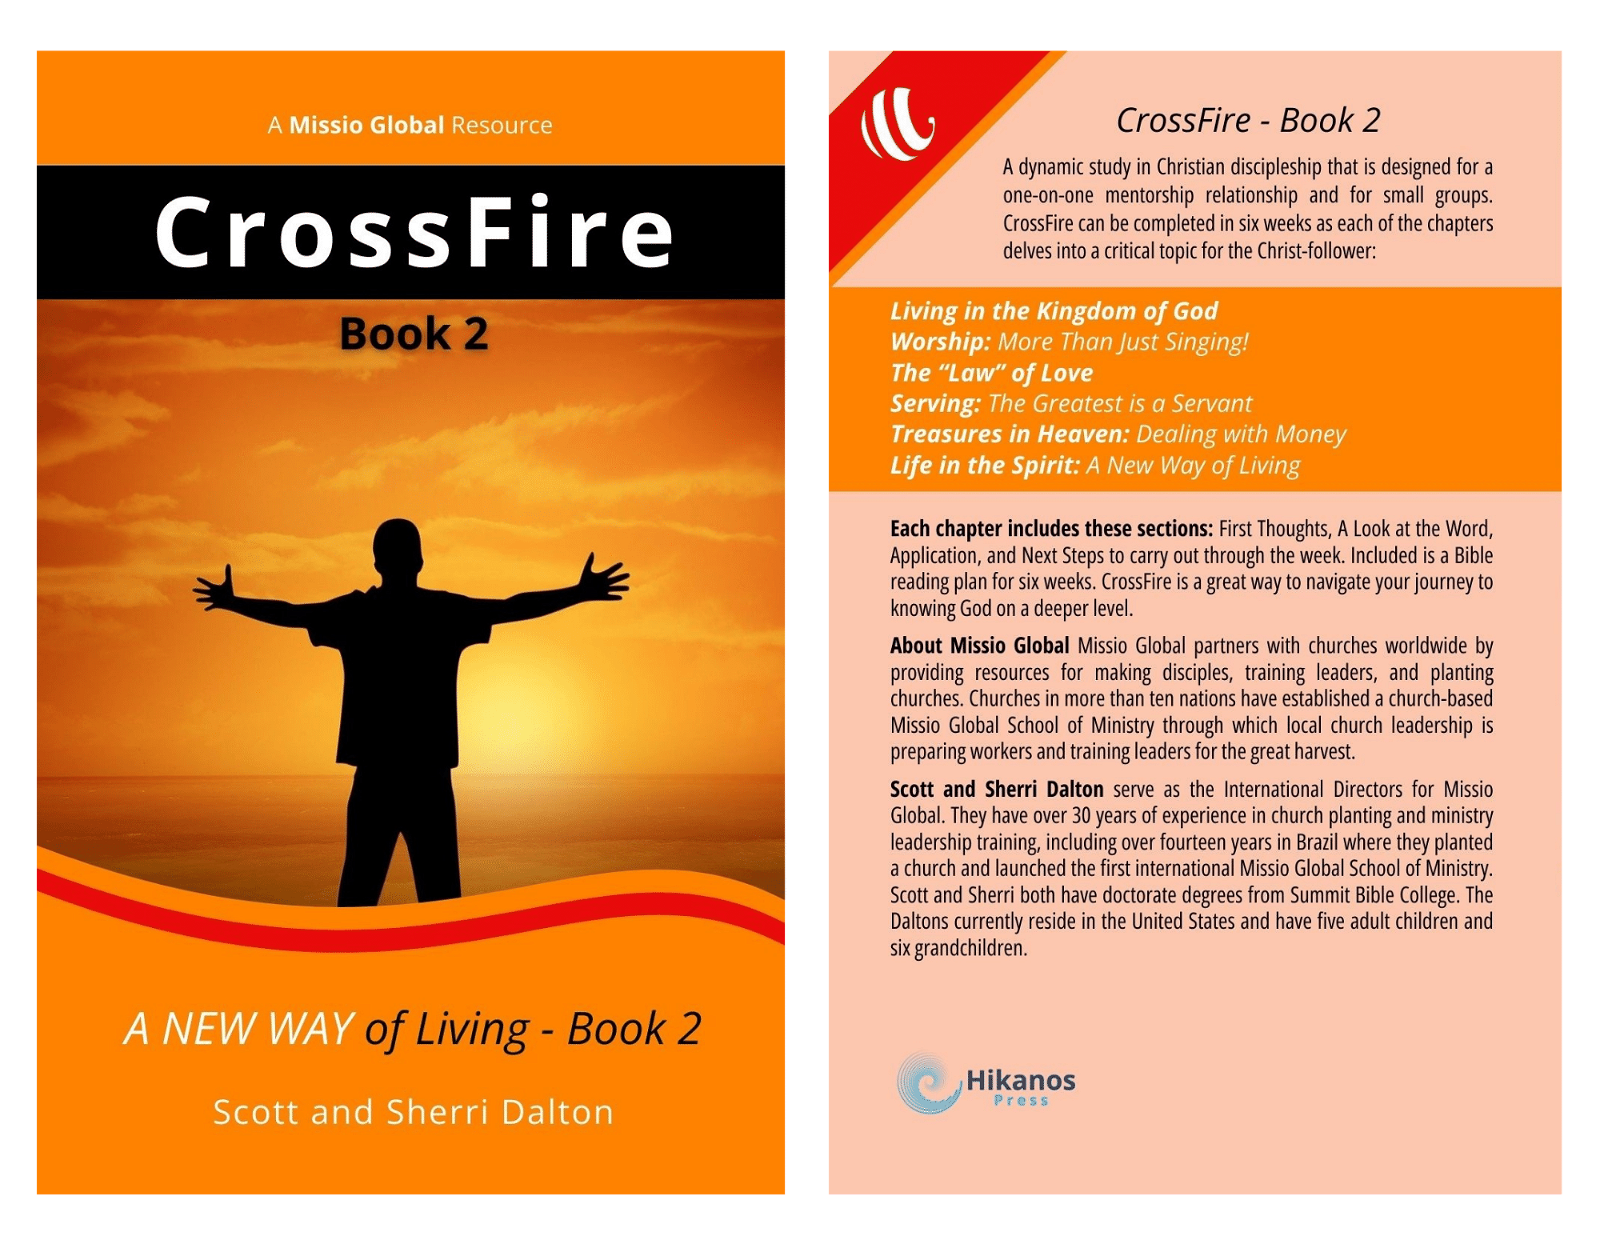 CrossFire Book 2 book cover